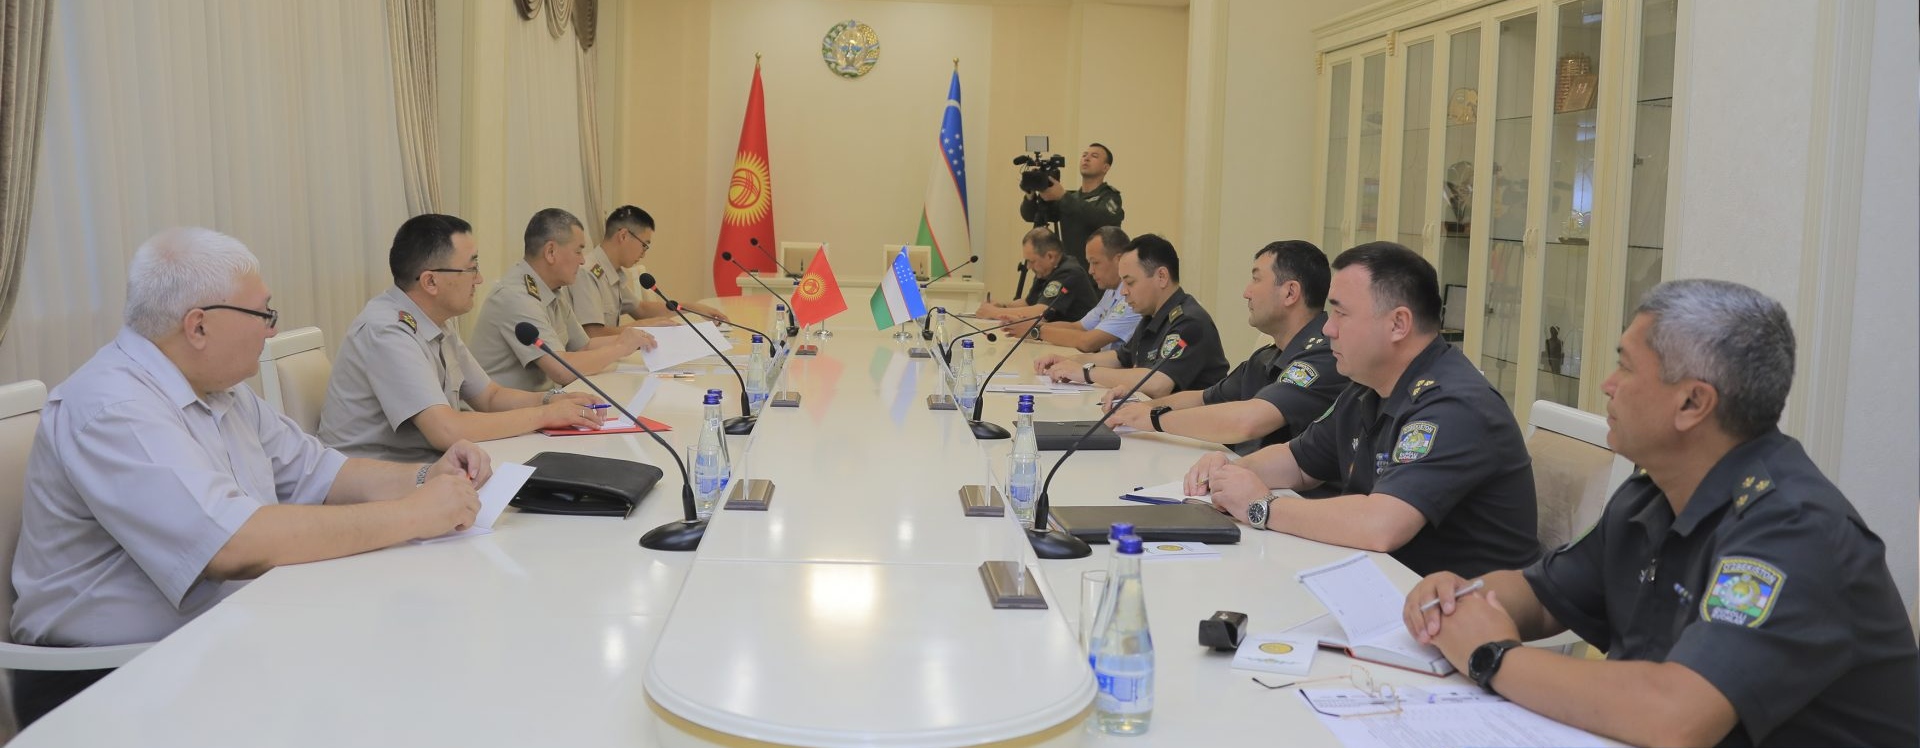 Военная делегация Киргизии в Узбекистане